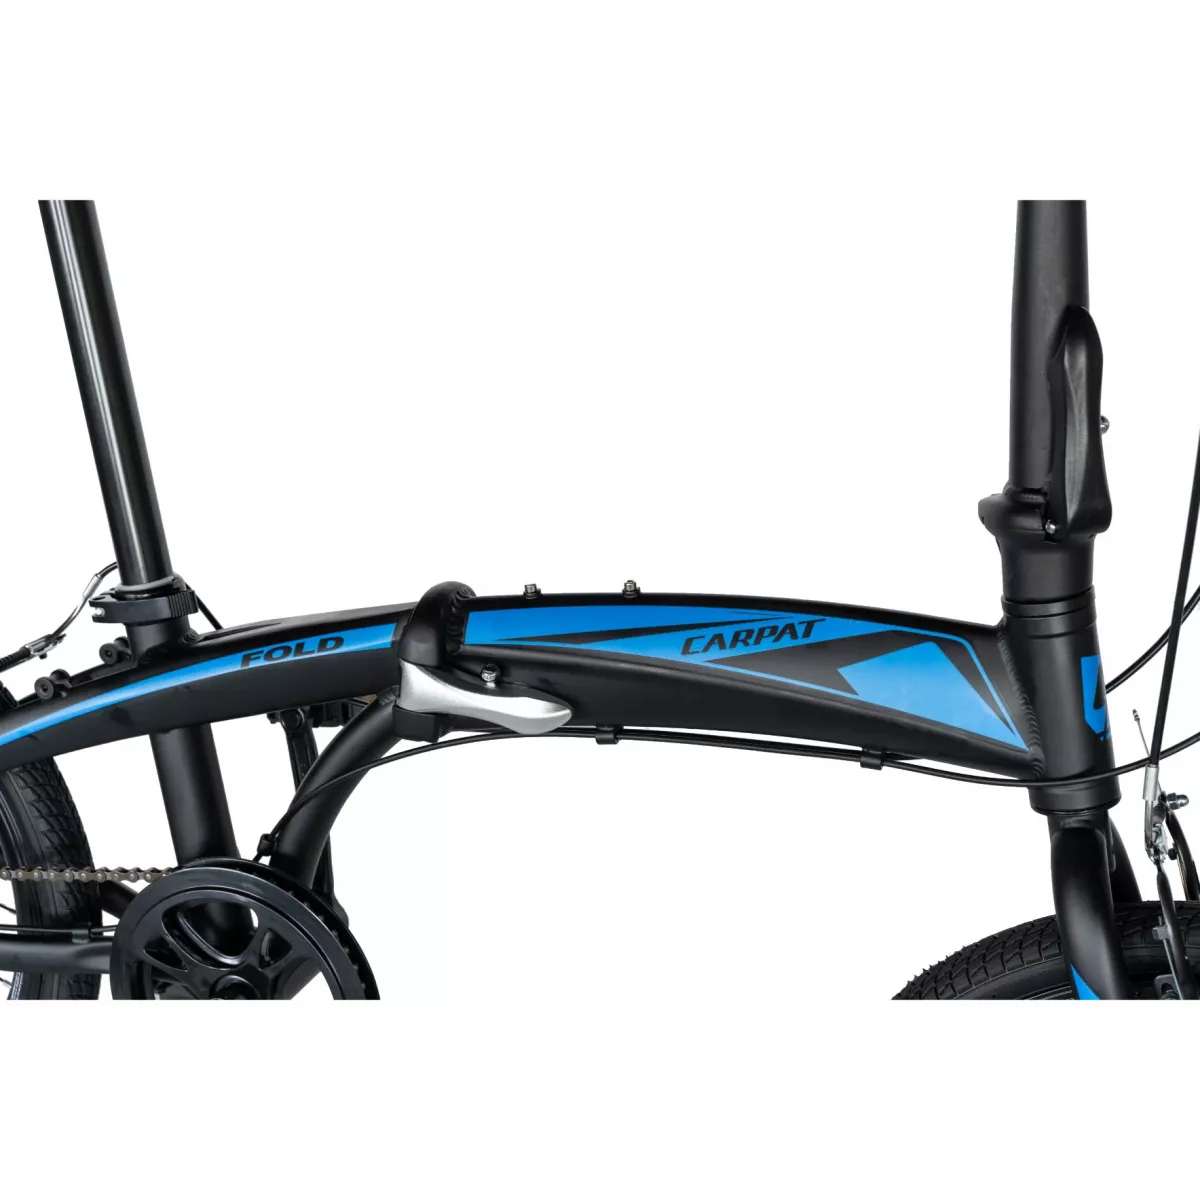 Bicicleta pliabila 20" CARPAT C2052C, echipare SHIMANO 7 viteze, culoare negru/albastru